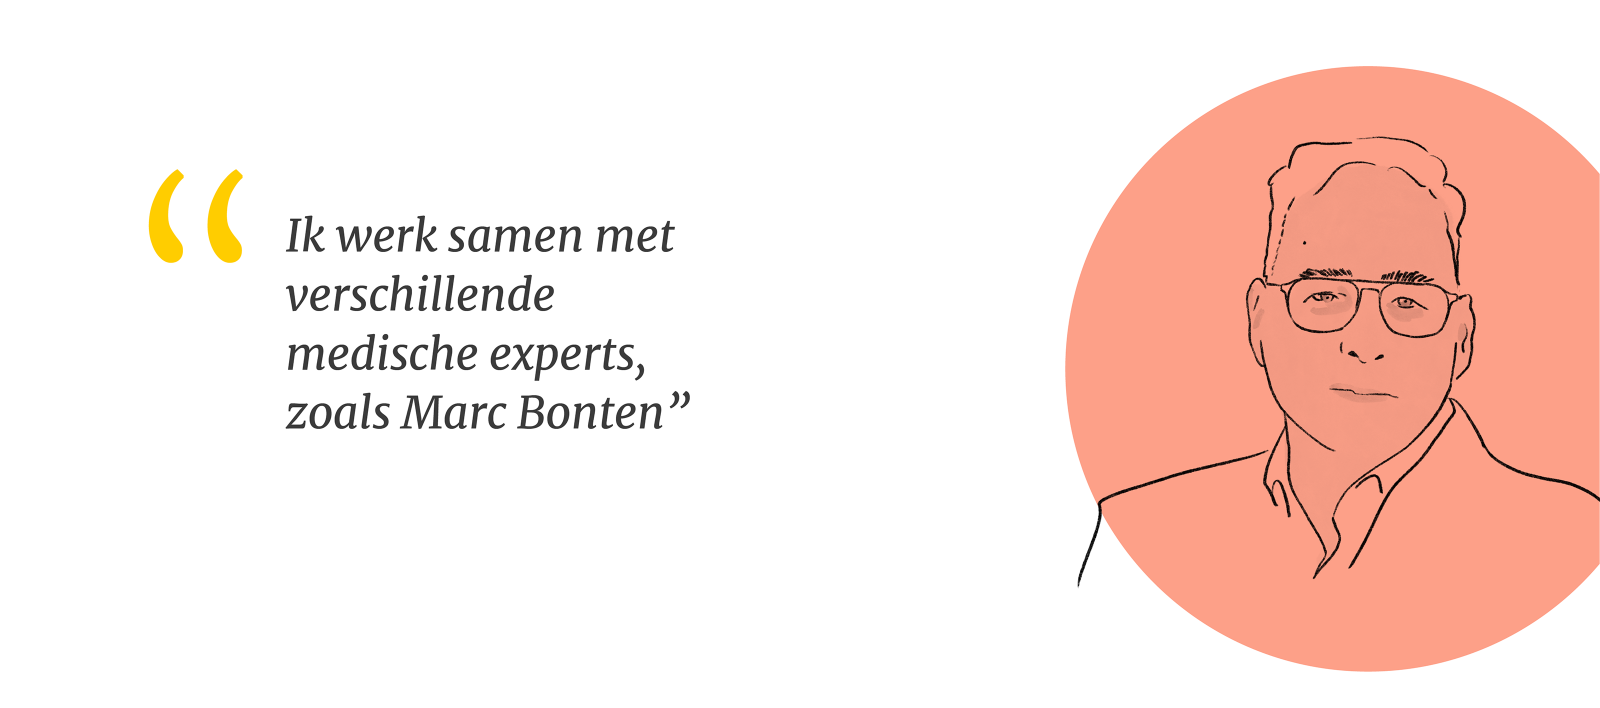 Illustratie van Marc Bonten met quote: Ik werk samen met verschillende medische experts, waaronder Marc Bonten